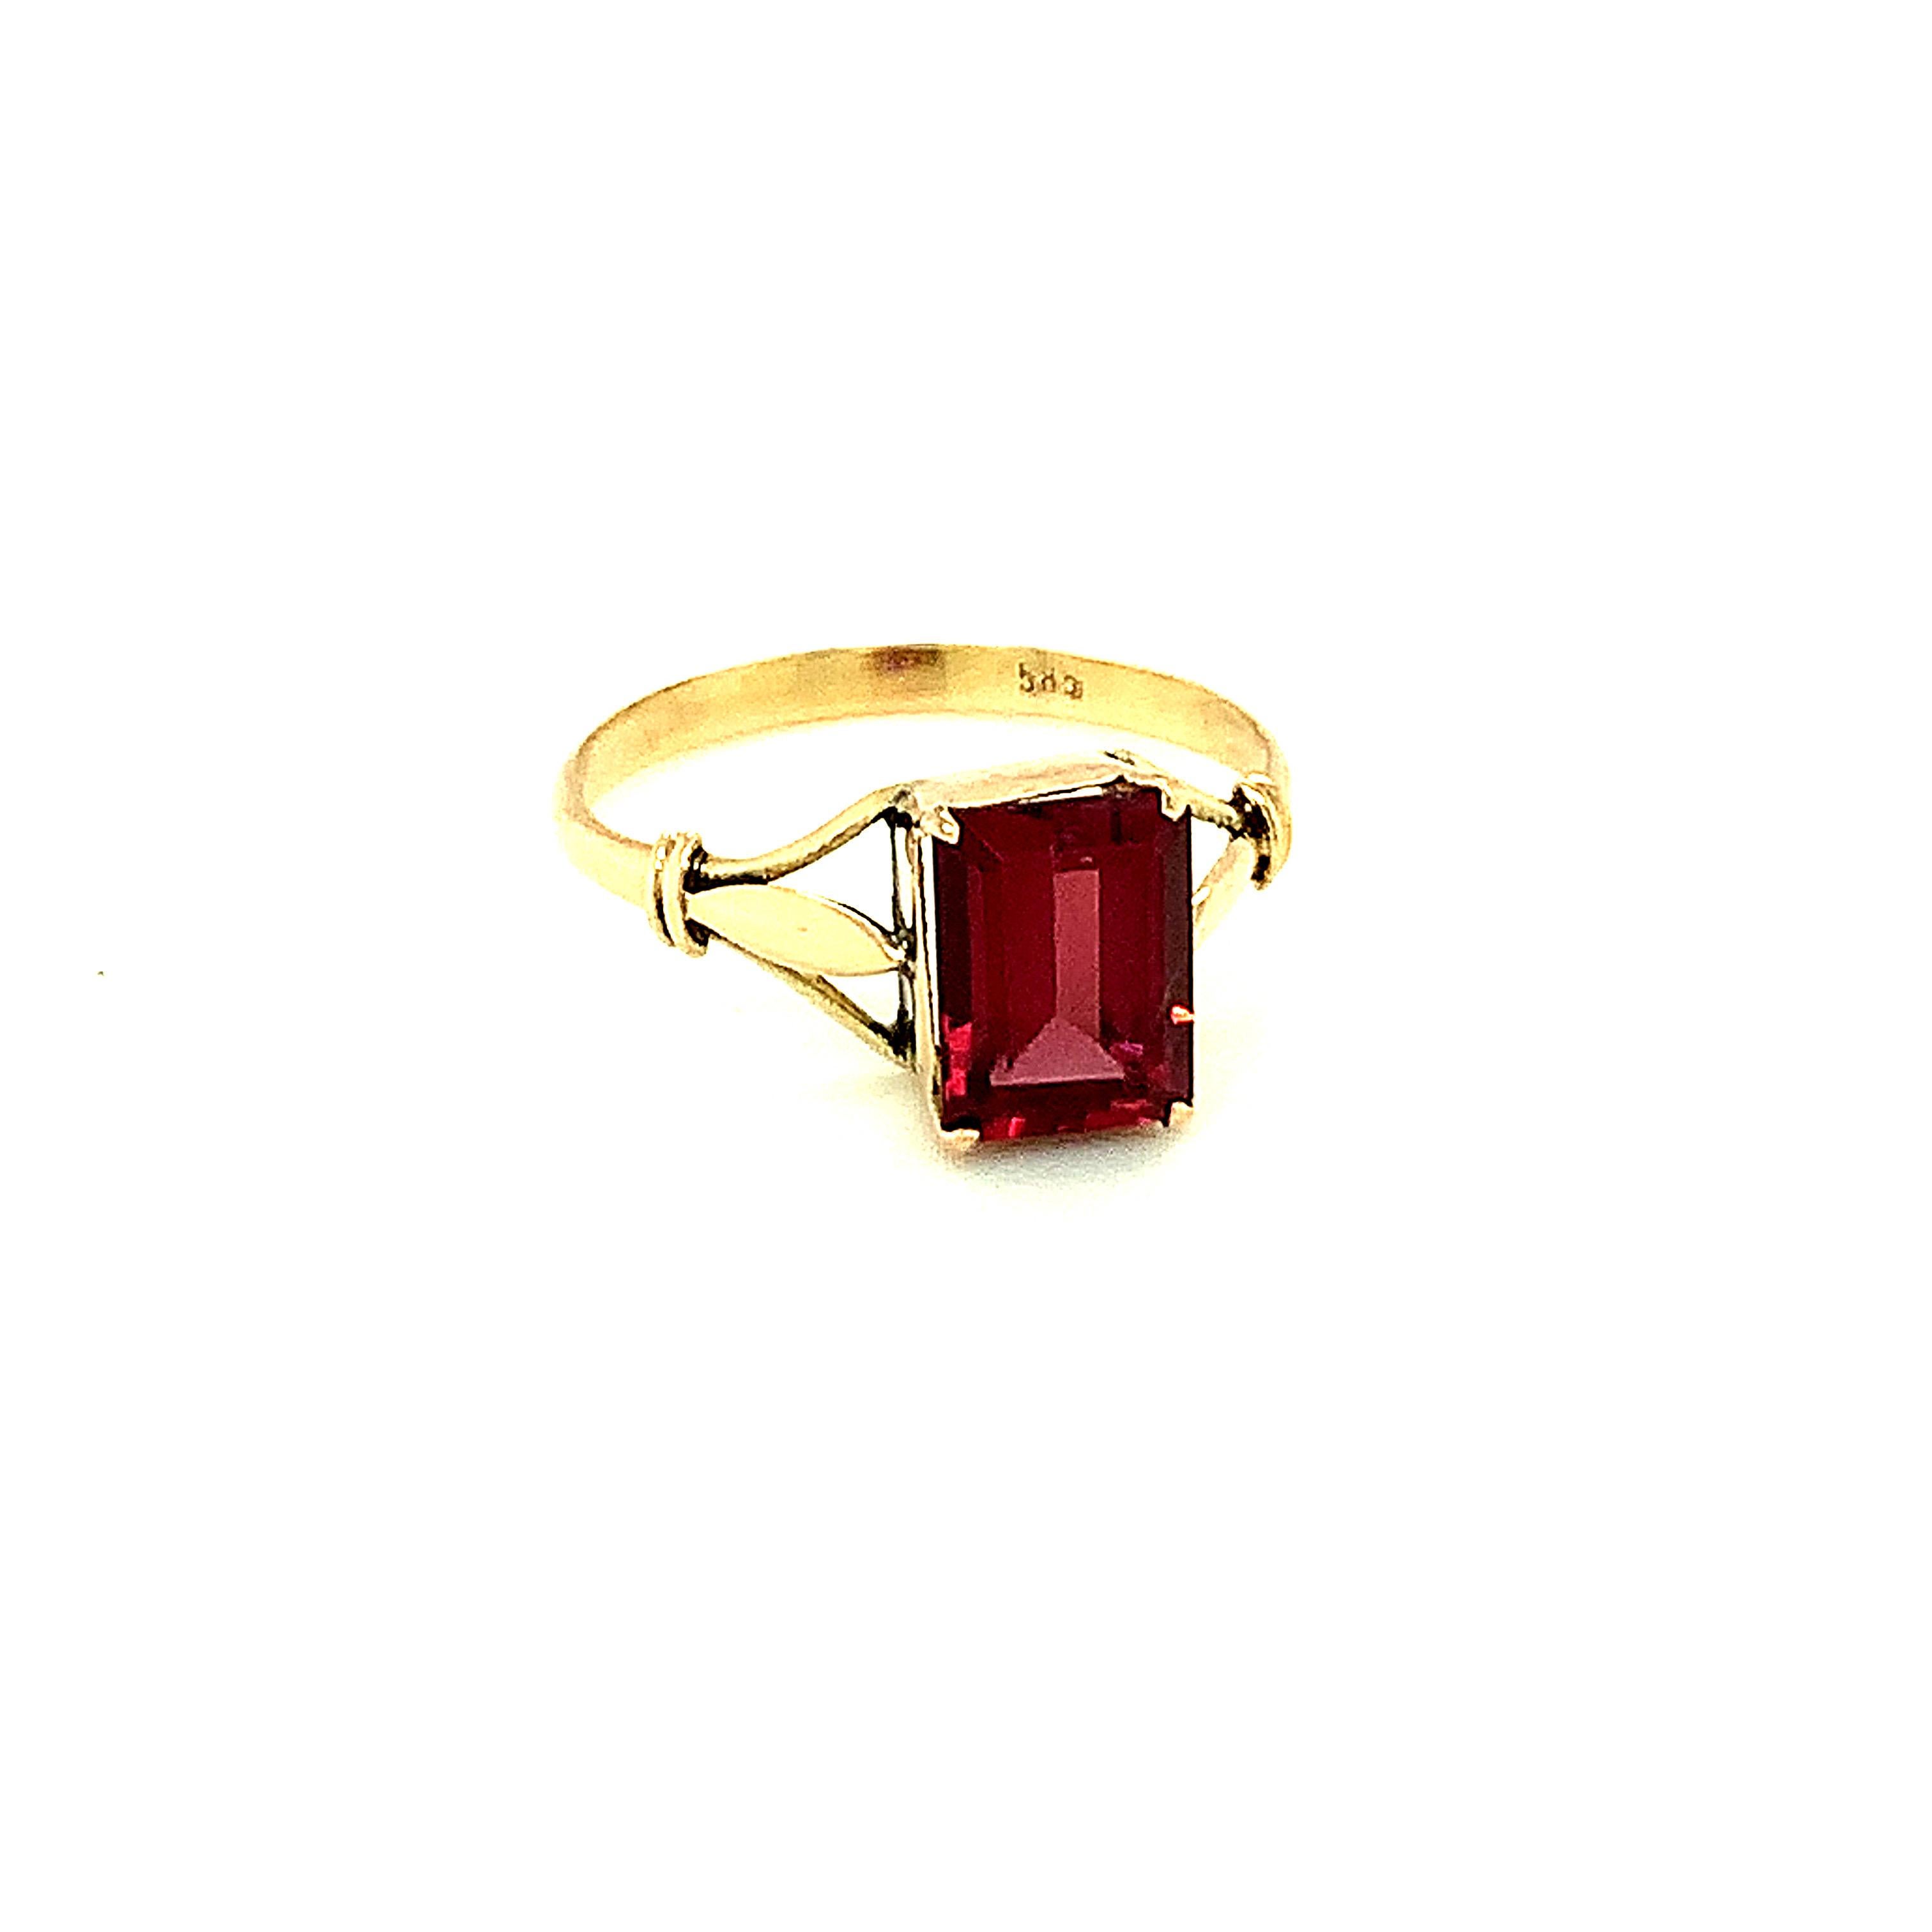 Dieser Ring mit Granat im Baguetteschliff ist in 14 Karat Gelbgold gefasst. 
Es ist einfach und schick und perfekt für den täglichen Gebrauch
Handgefertigt 
Natürliche Edelsteine aus ethischen Quellen